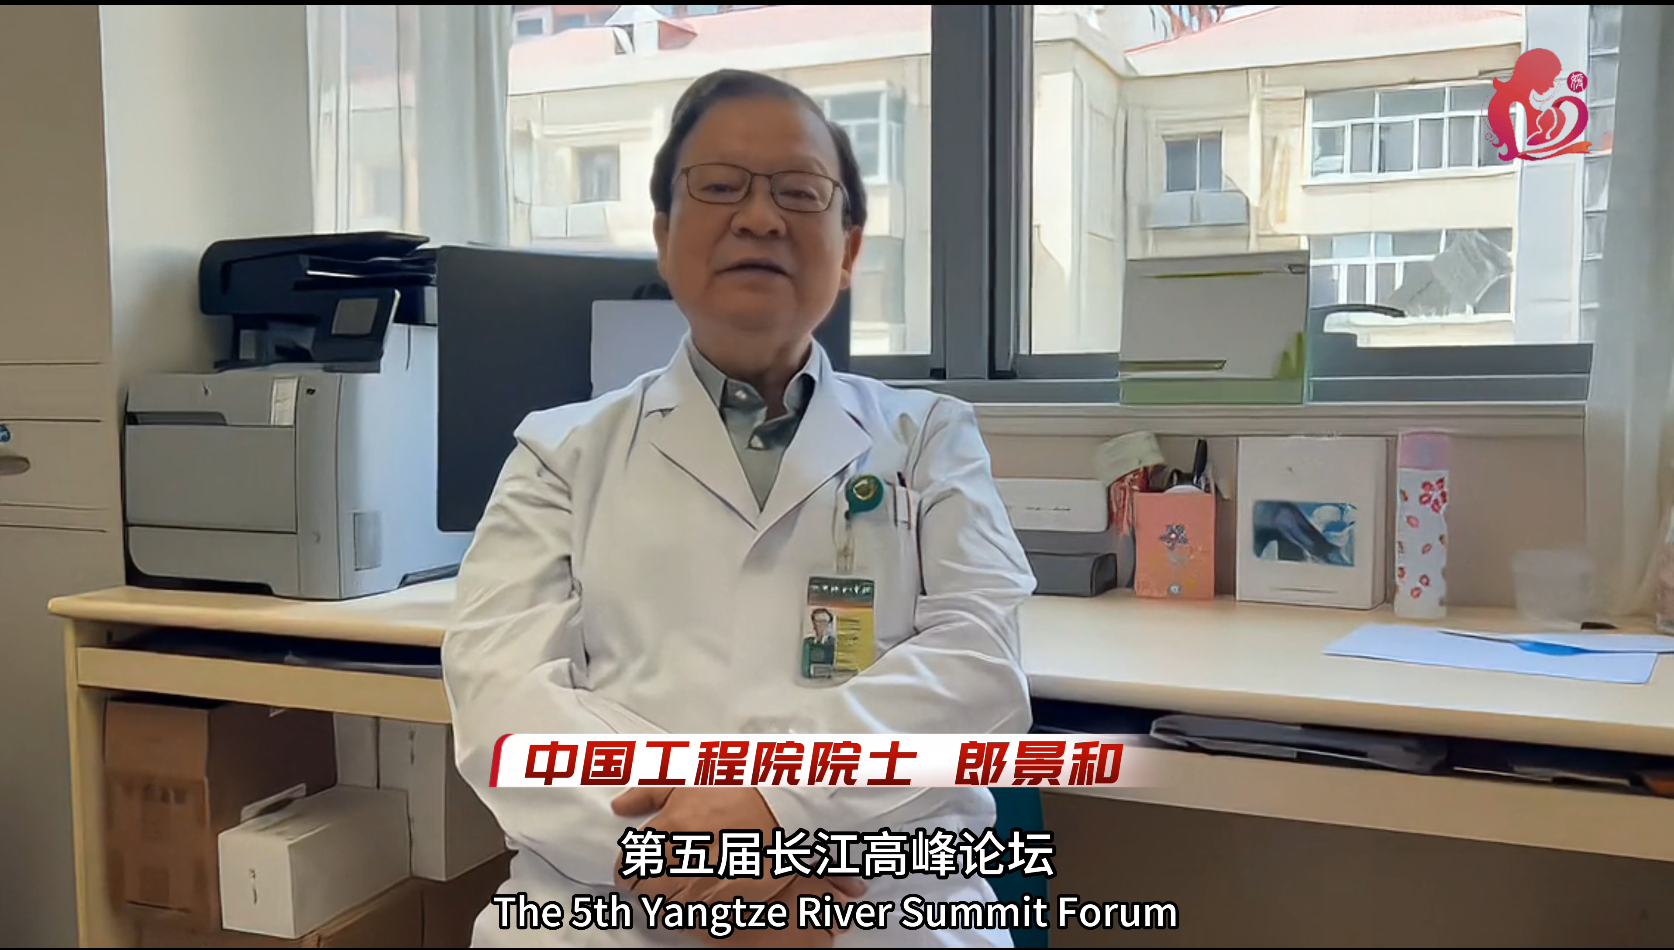 中外专家齐聚重庆研讨微无创医学前沿技术